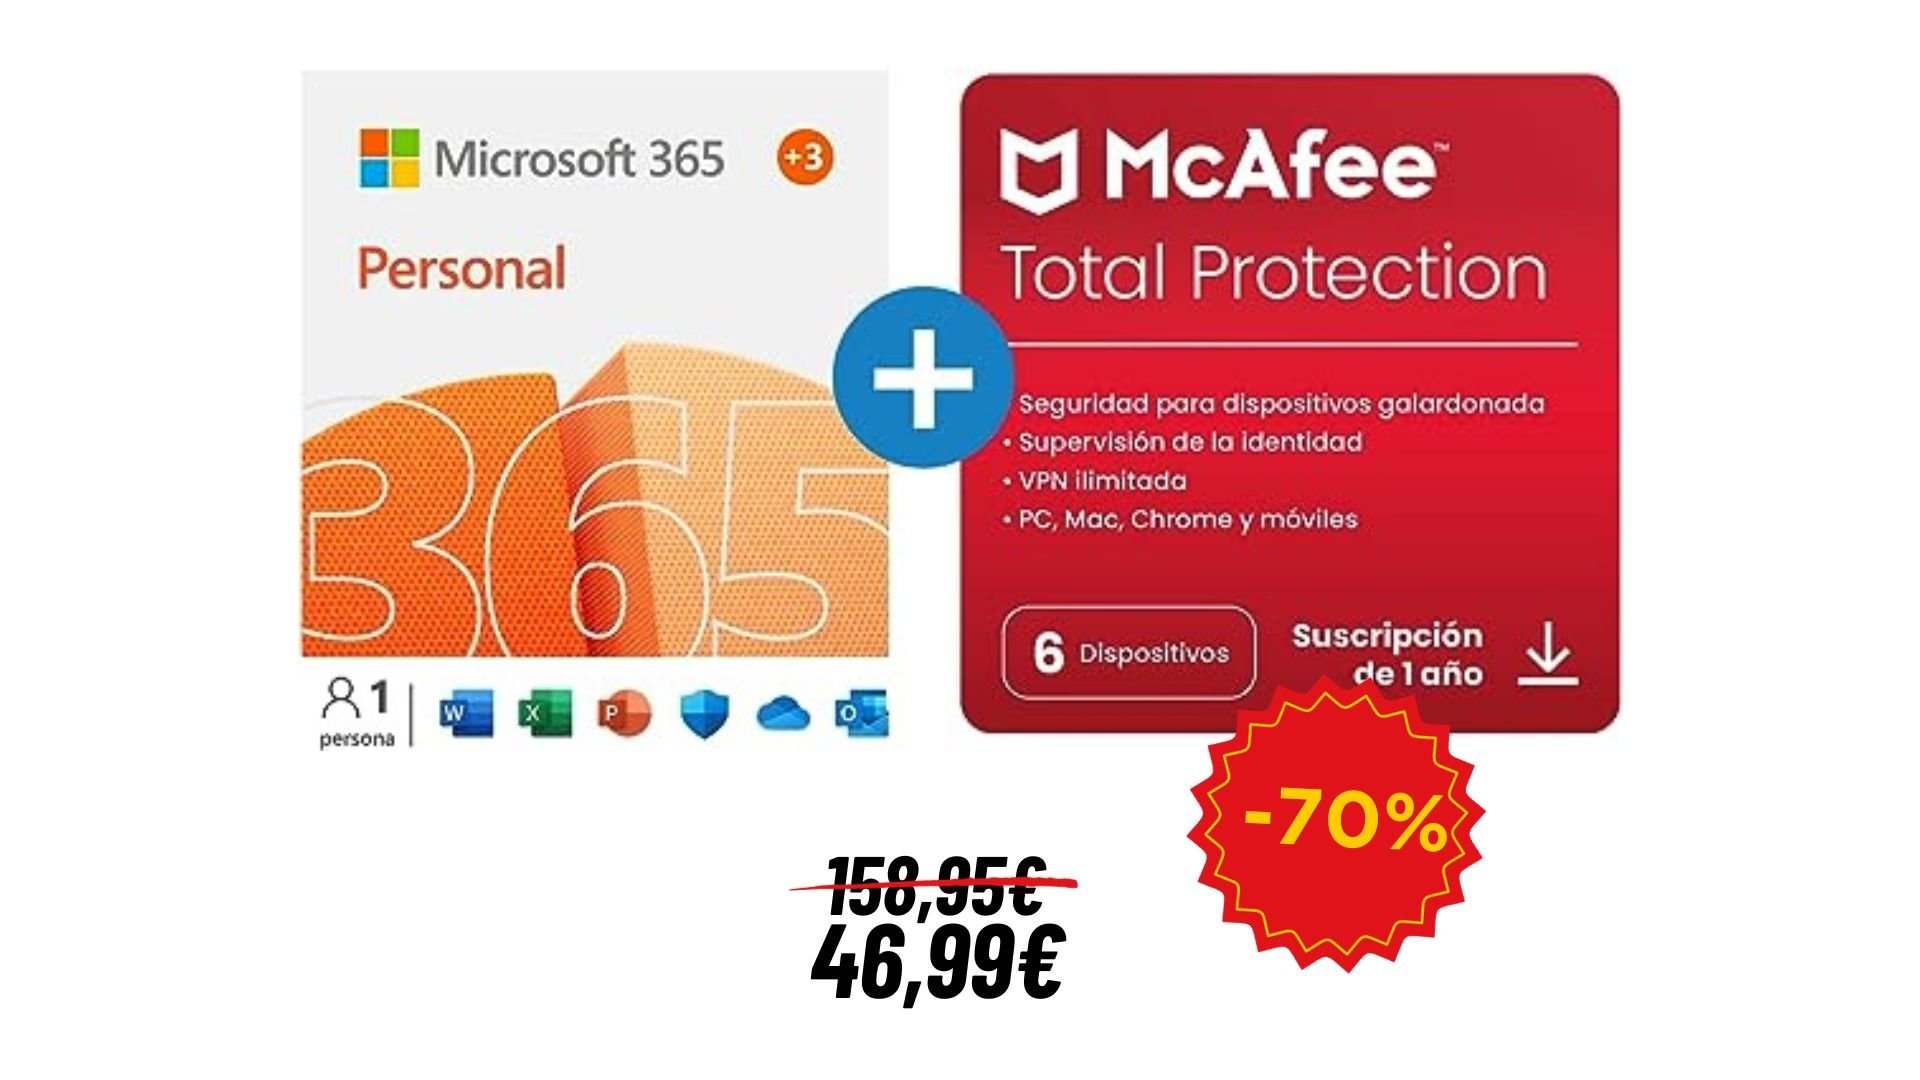 Amazon tiene el pack de Microsoft 365 + McAfee para 15 meses por 46,99 euros